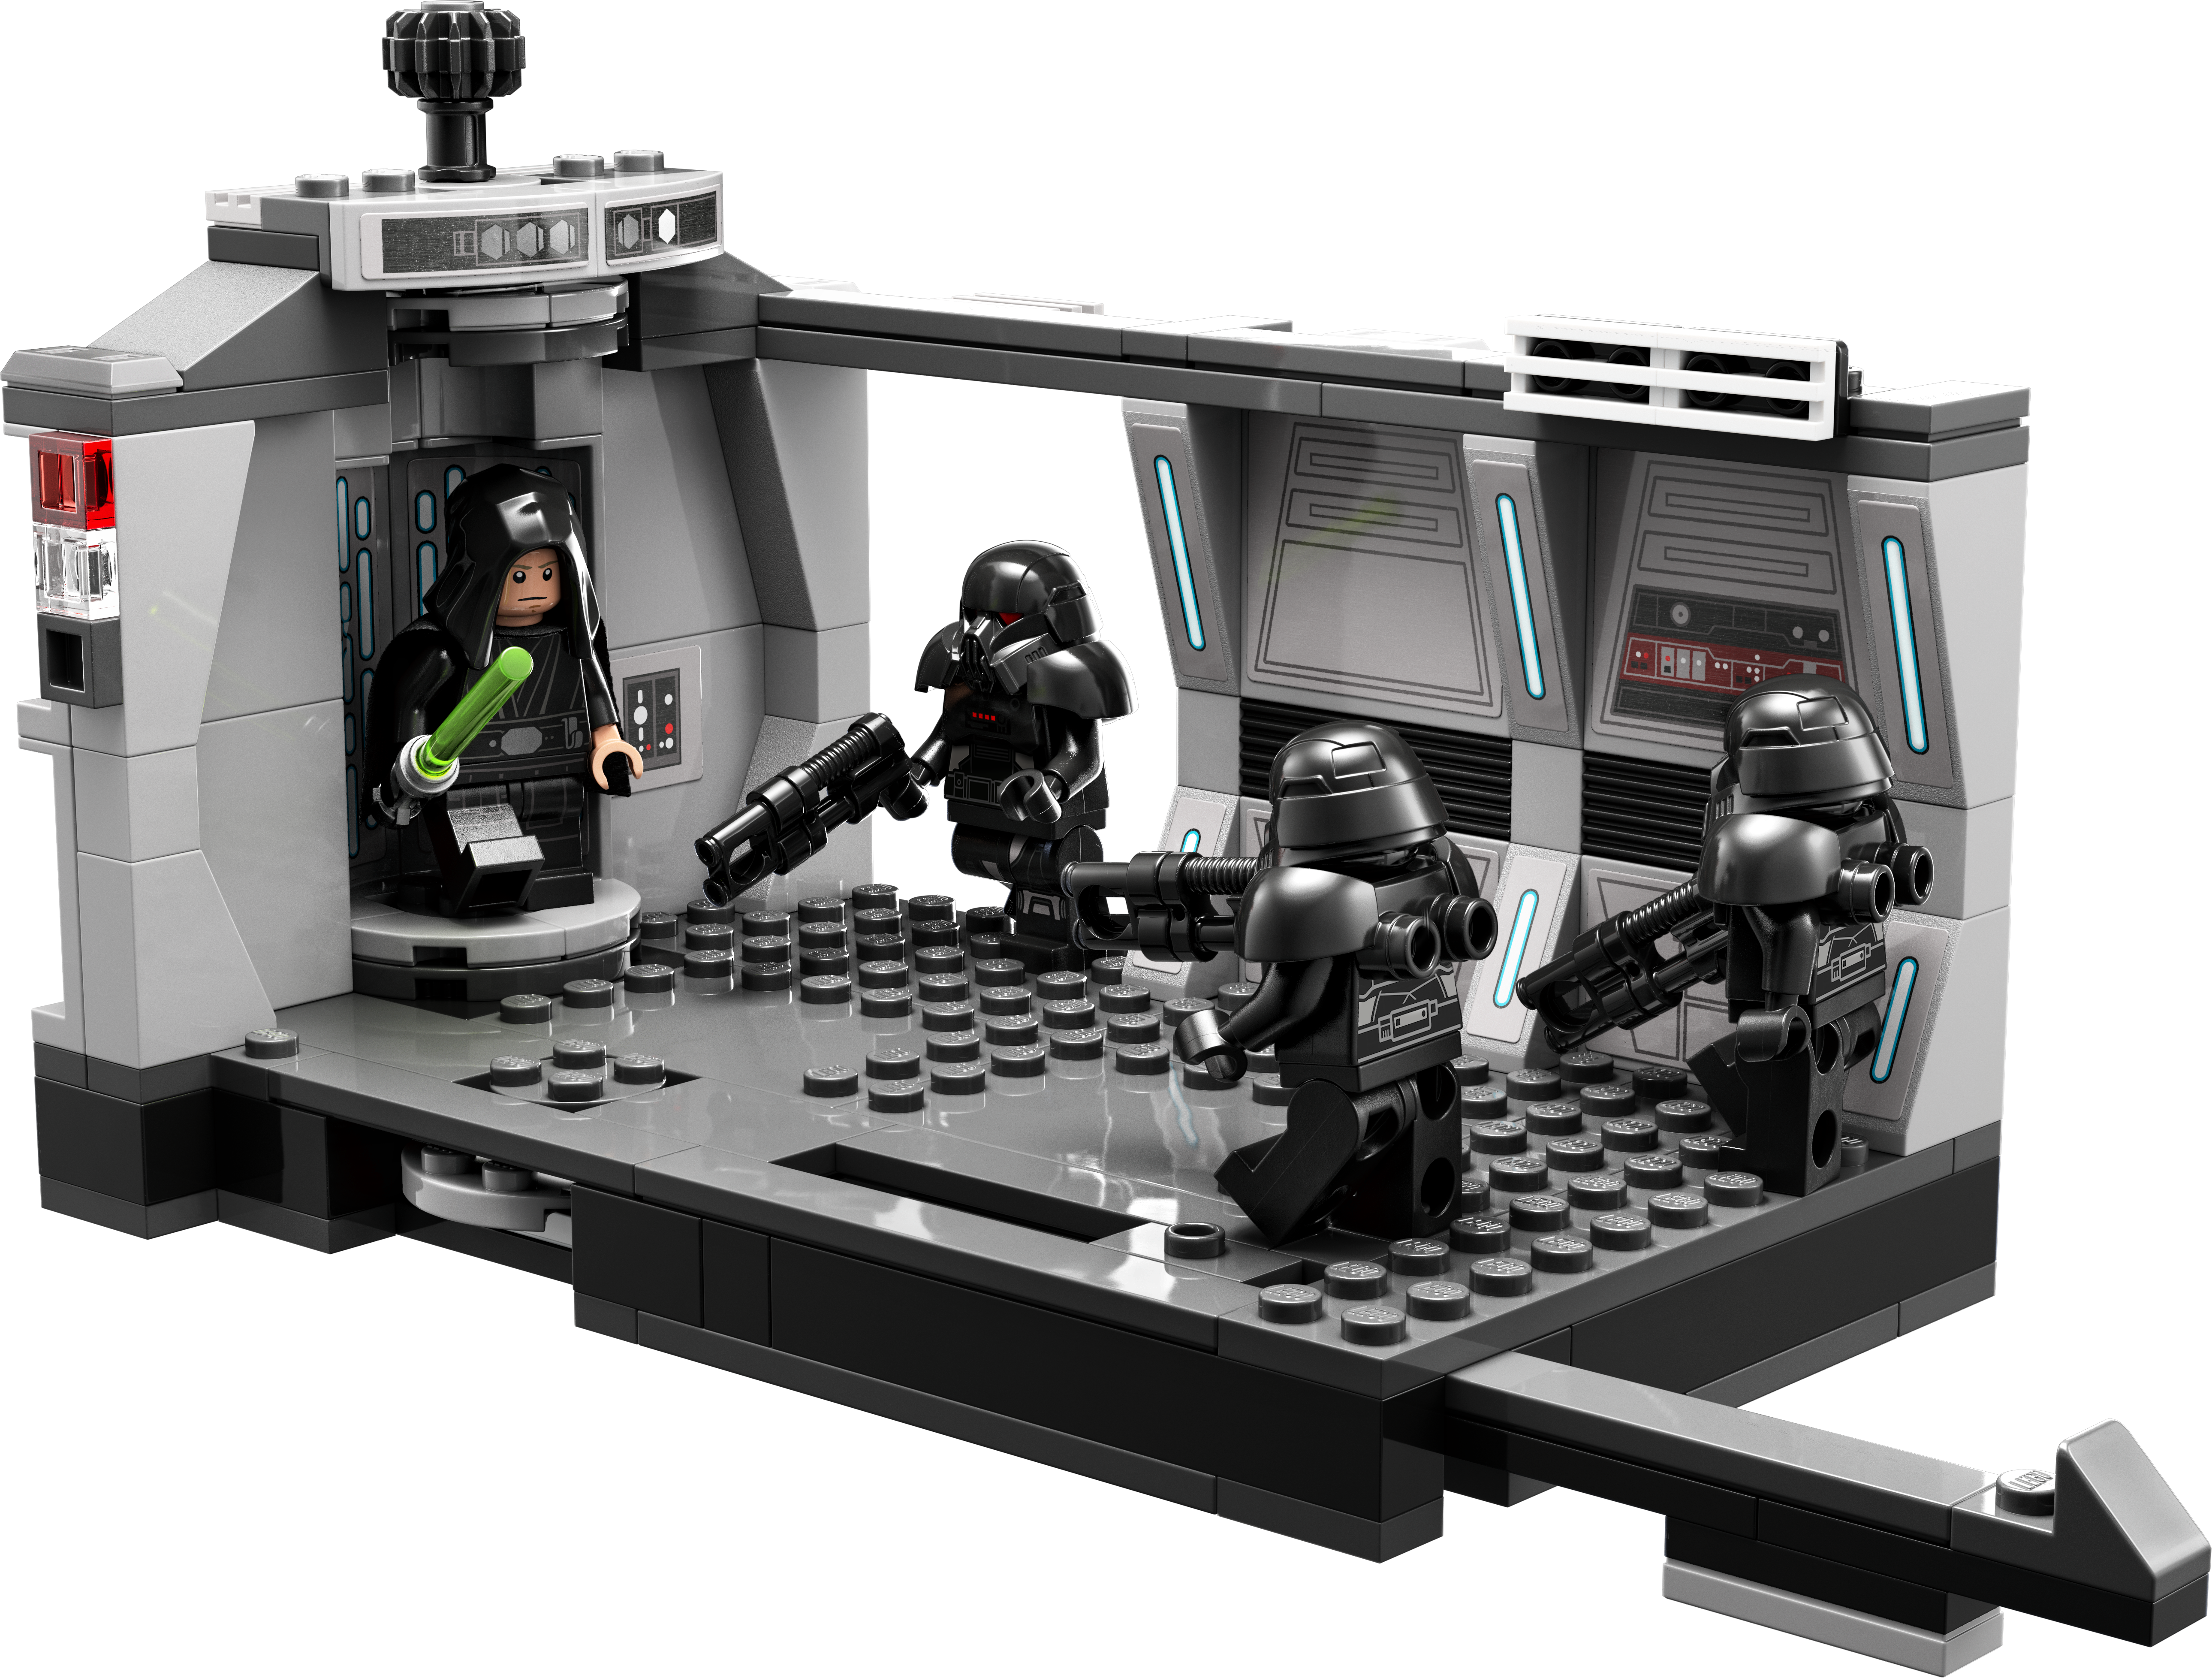 LEGO® Star Wars™ 75324 Angriff der Dark Trooper™